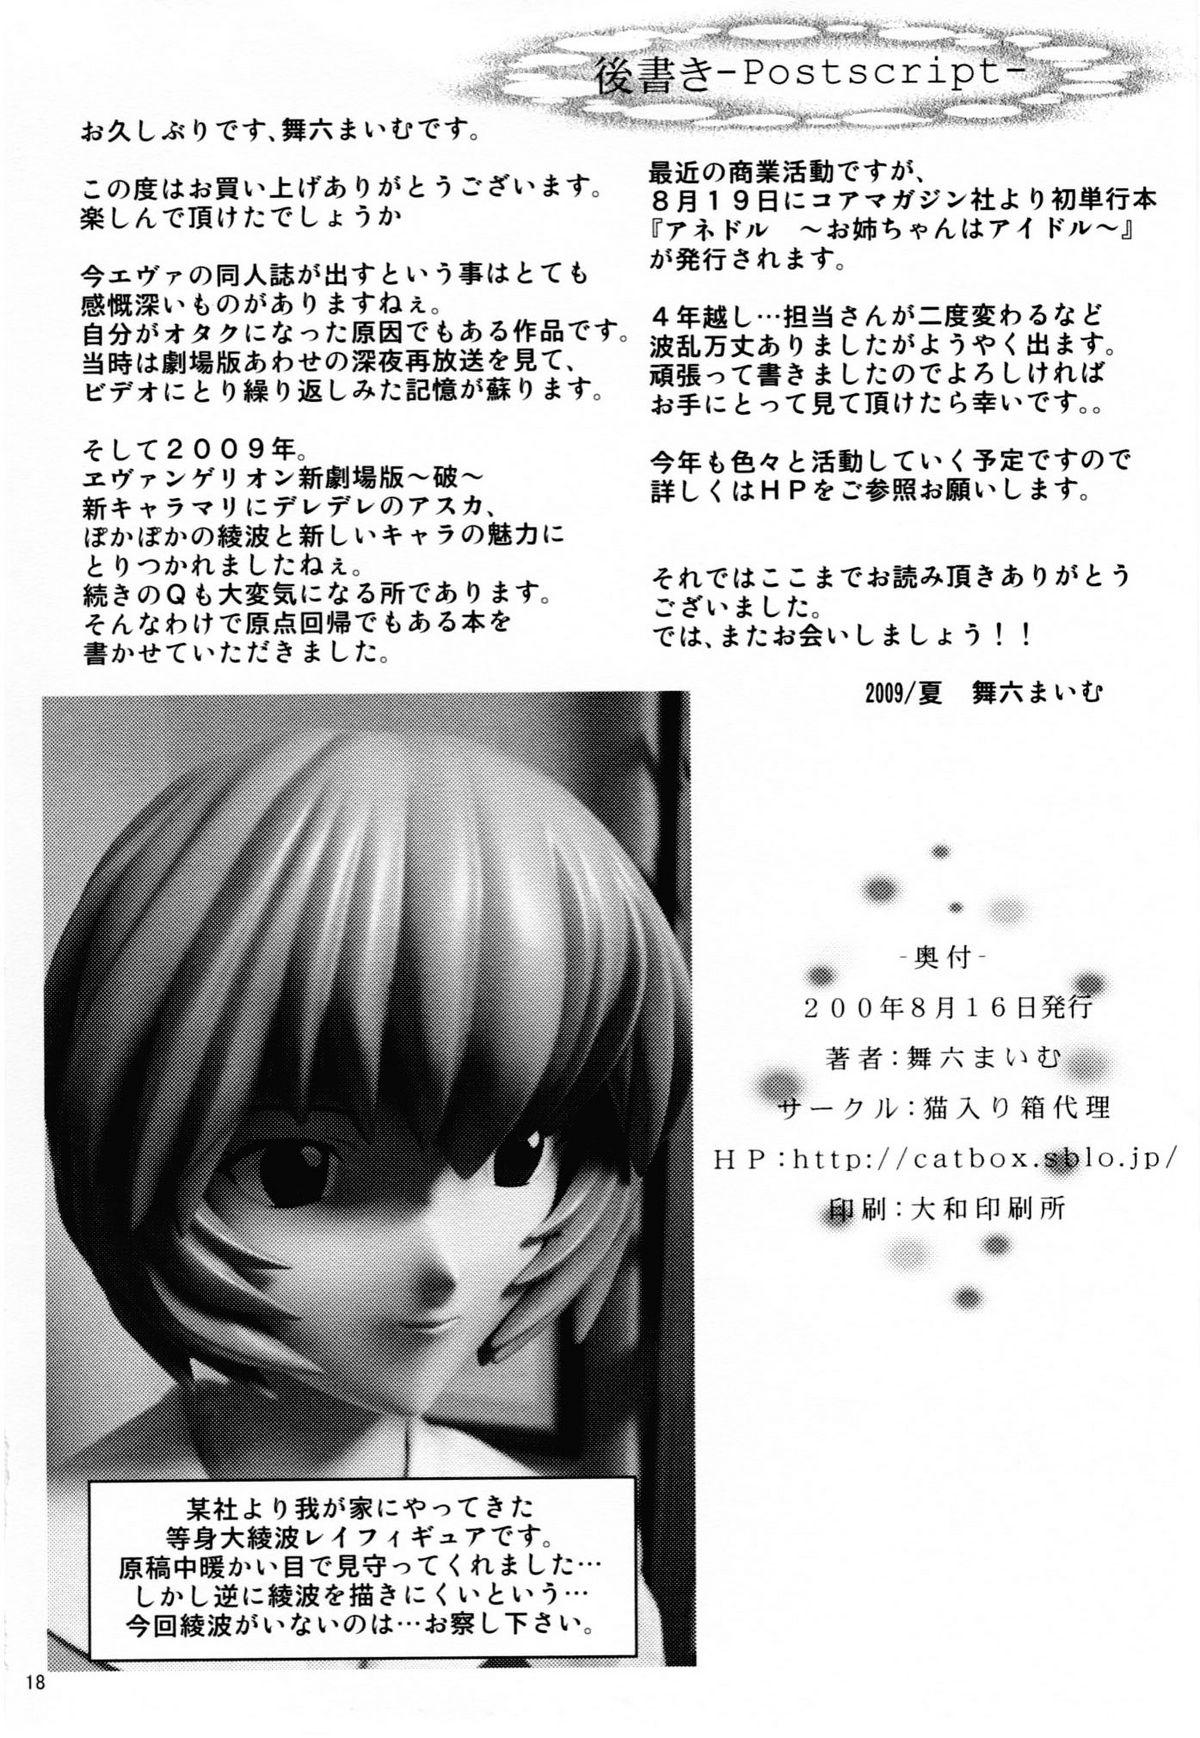 Mms (C76) [Neko Iri Bako Dairi (Maimu-Maimu)] beast - YOU CAN (NOT) HENTAI. (Rebuild of Evangelion) [English] =LWB= - Neon genesis evangelion Selfie - Page 16